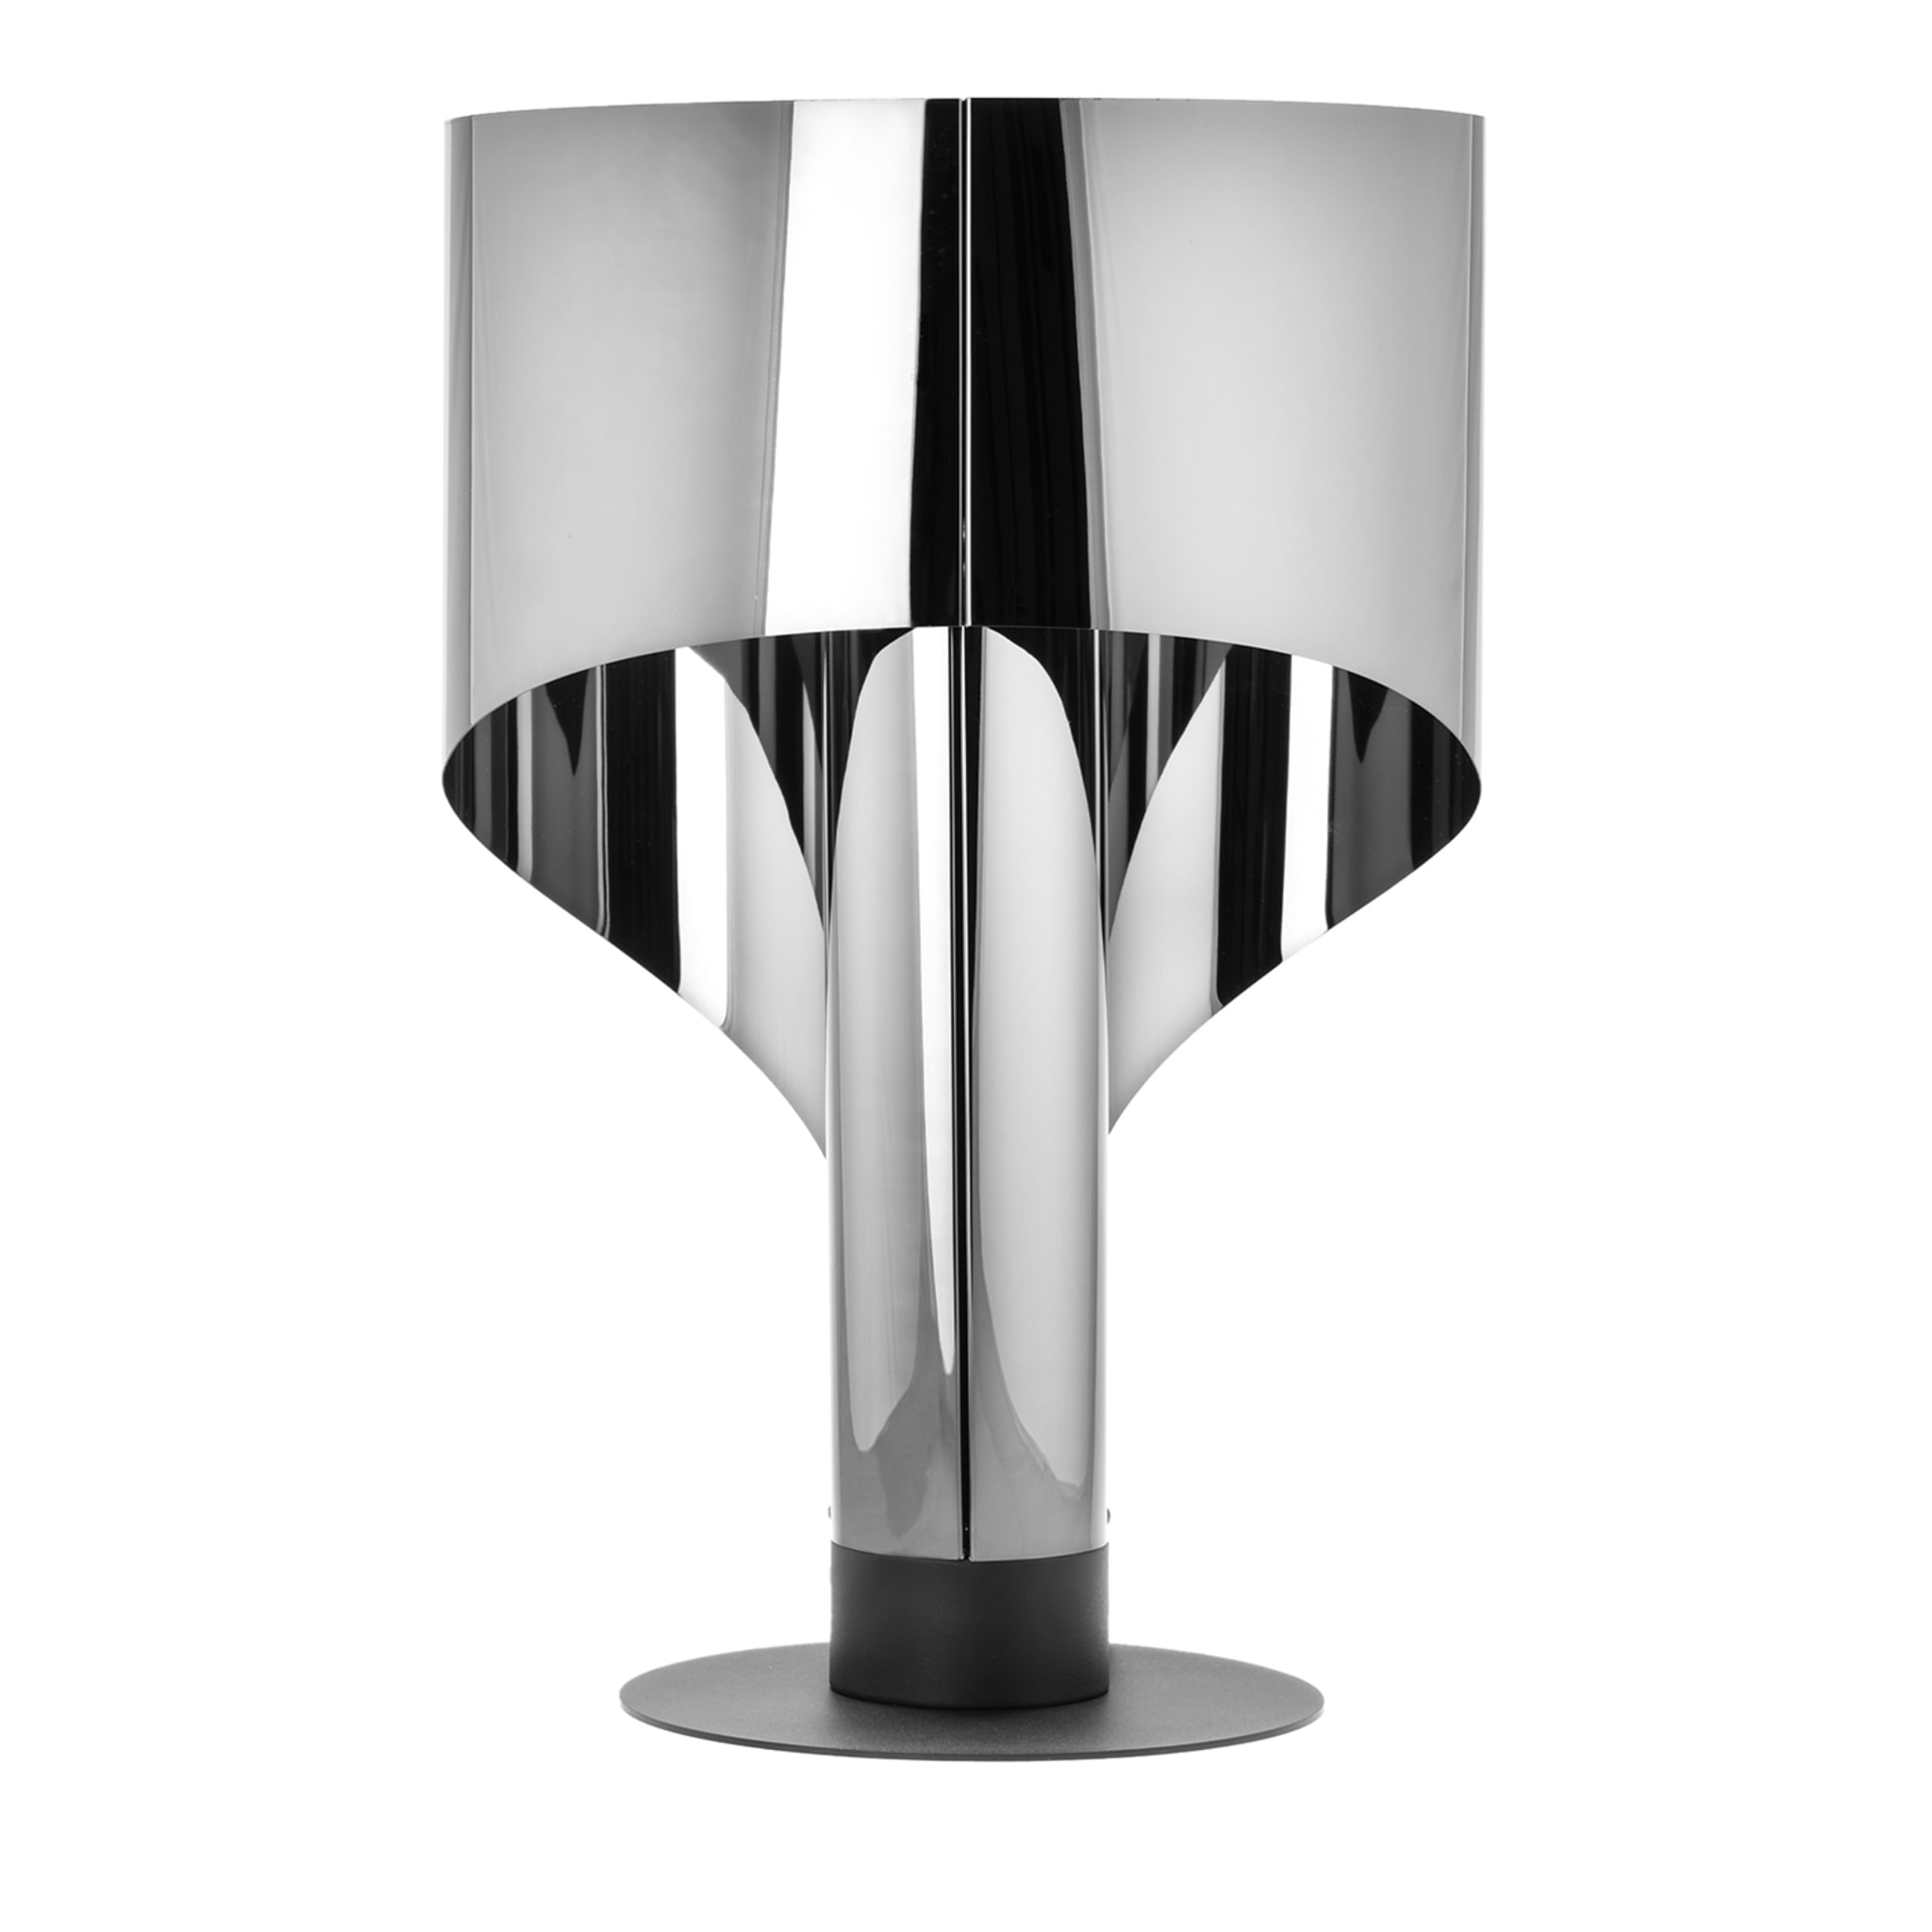  SPINNAKER steel table lamp by Corsini Wiskemann - Main view